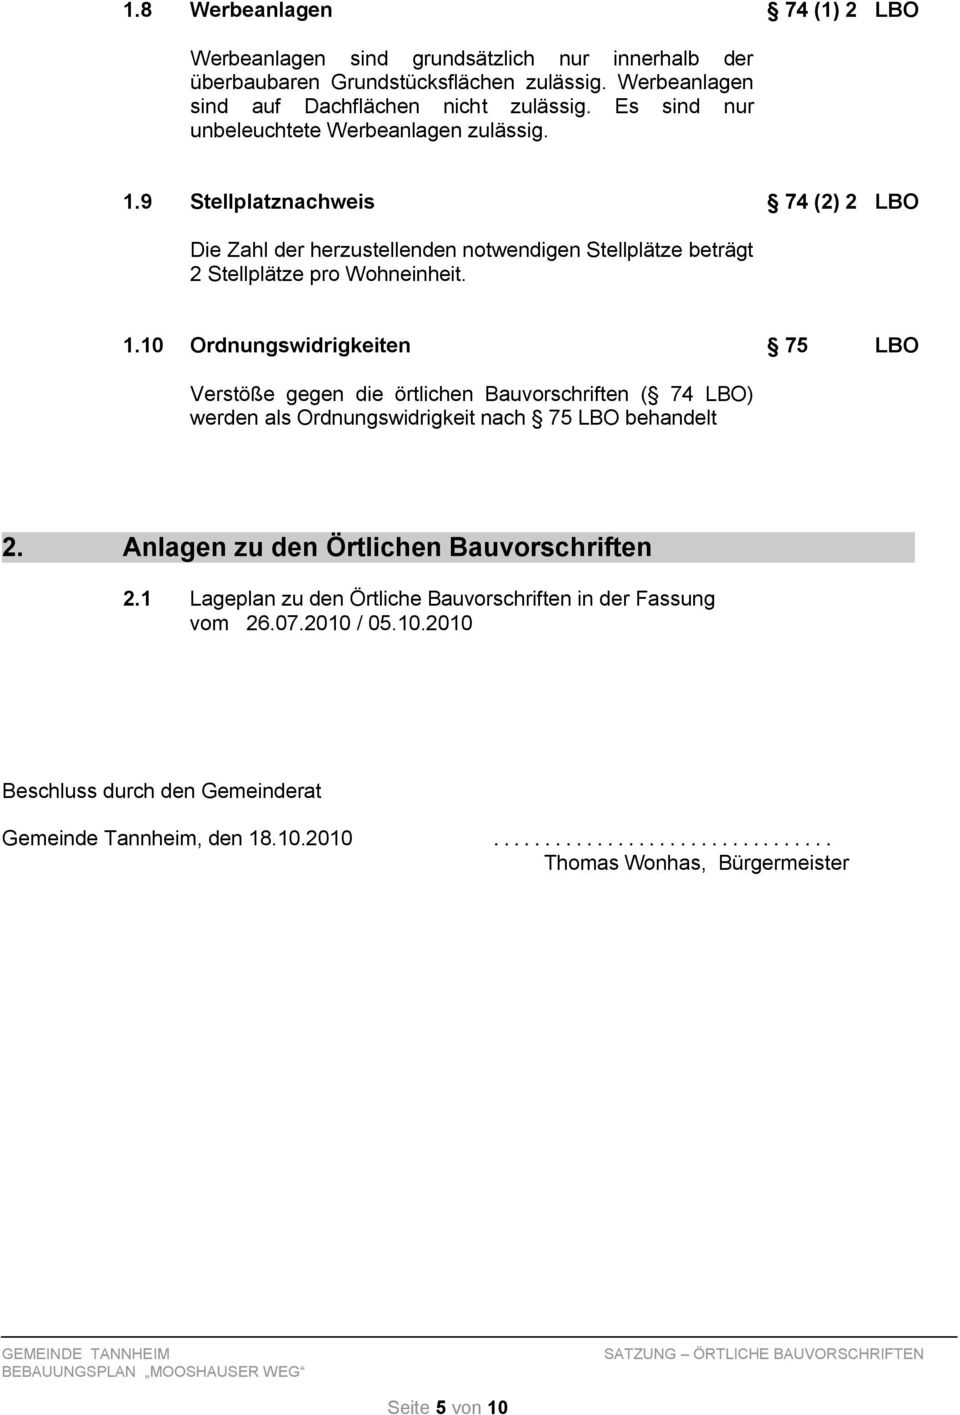 Anlagen zu den Örtlichen Bauvorschriften 2.1 Lageplan zu den Örtliche Bauvorschriften in der Fassung vom 26.07.2010 / 05.10.2010 Beschluss durch den Gemeinderat Gemeinde Tannheim, den 18.10.2010................................. Thomas Wonhas, Bürgermeister Seite 5 von 10